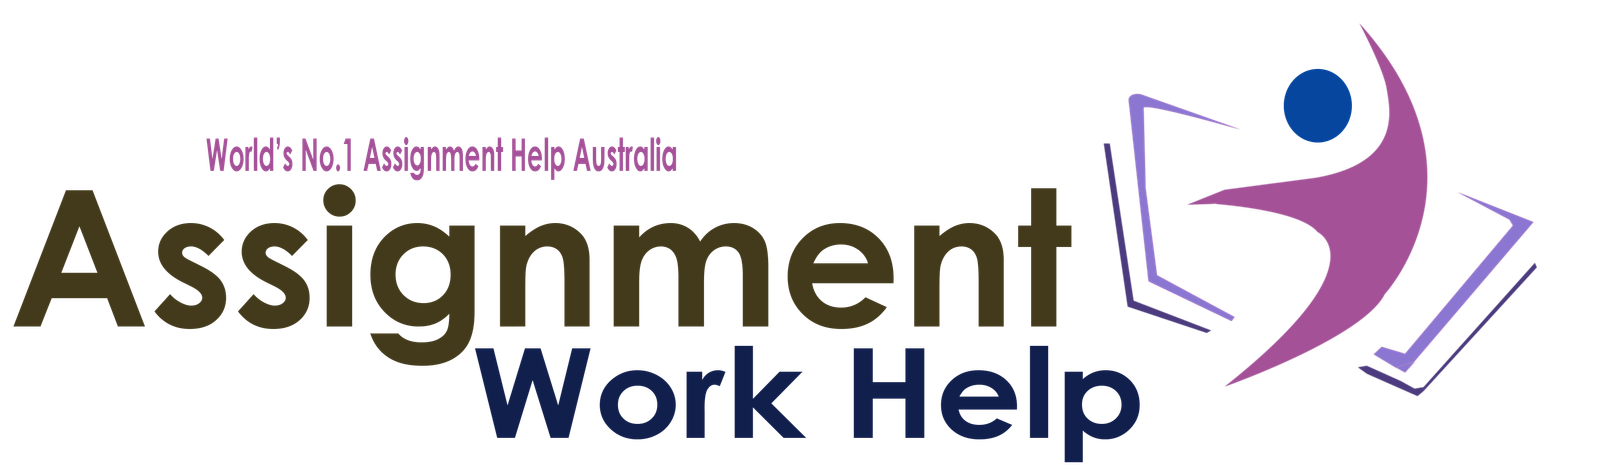 Assignment Work Help Logo